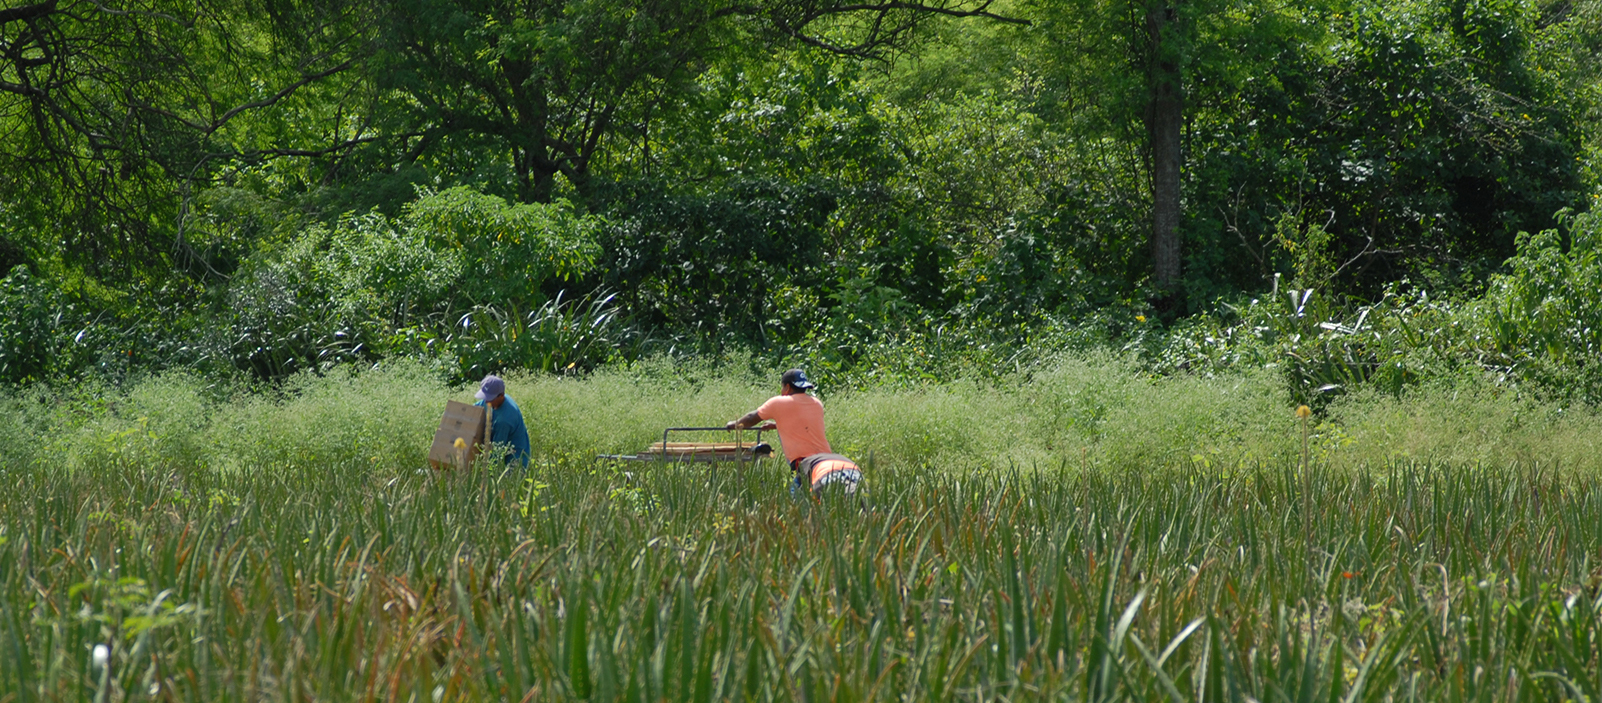 Zwei Kleinbauern schieben, in einem Aloe Vera Feld, Kisten, im Hintergrund ist Wald